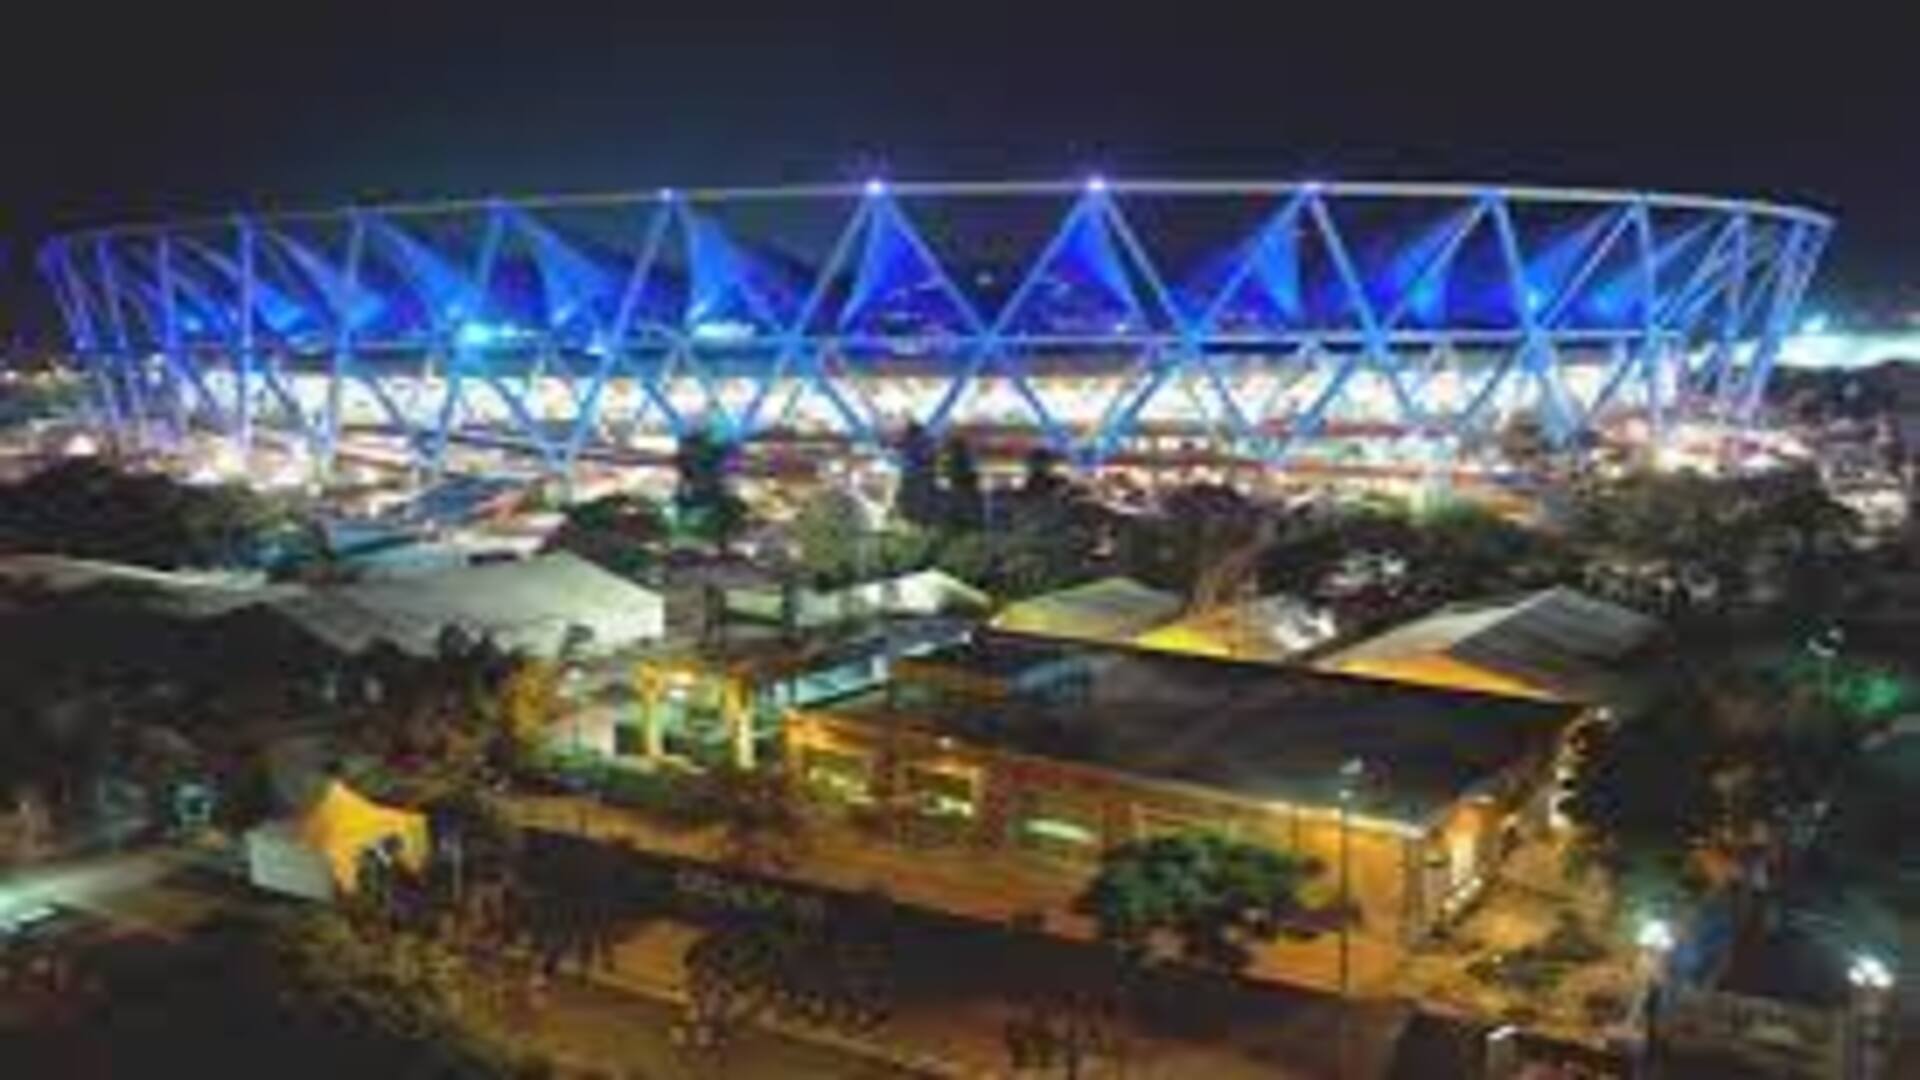 Jawaharlal Nehru Stadium